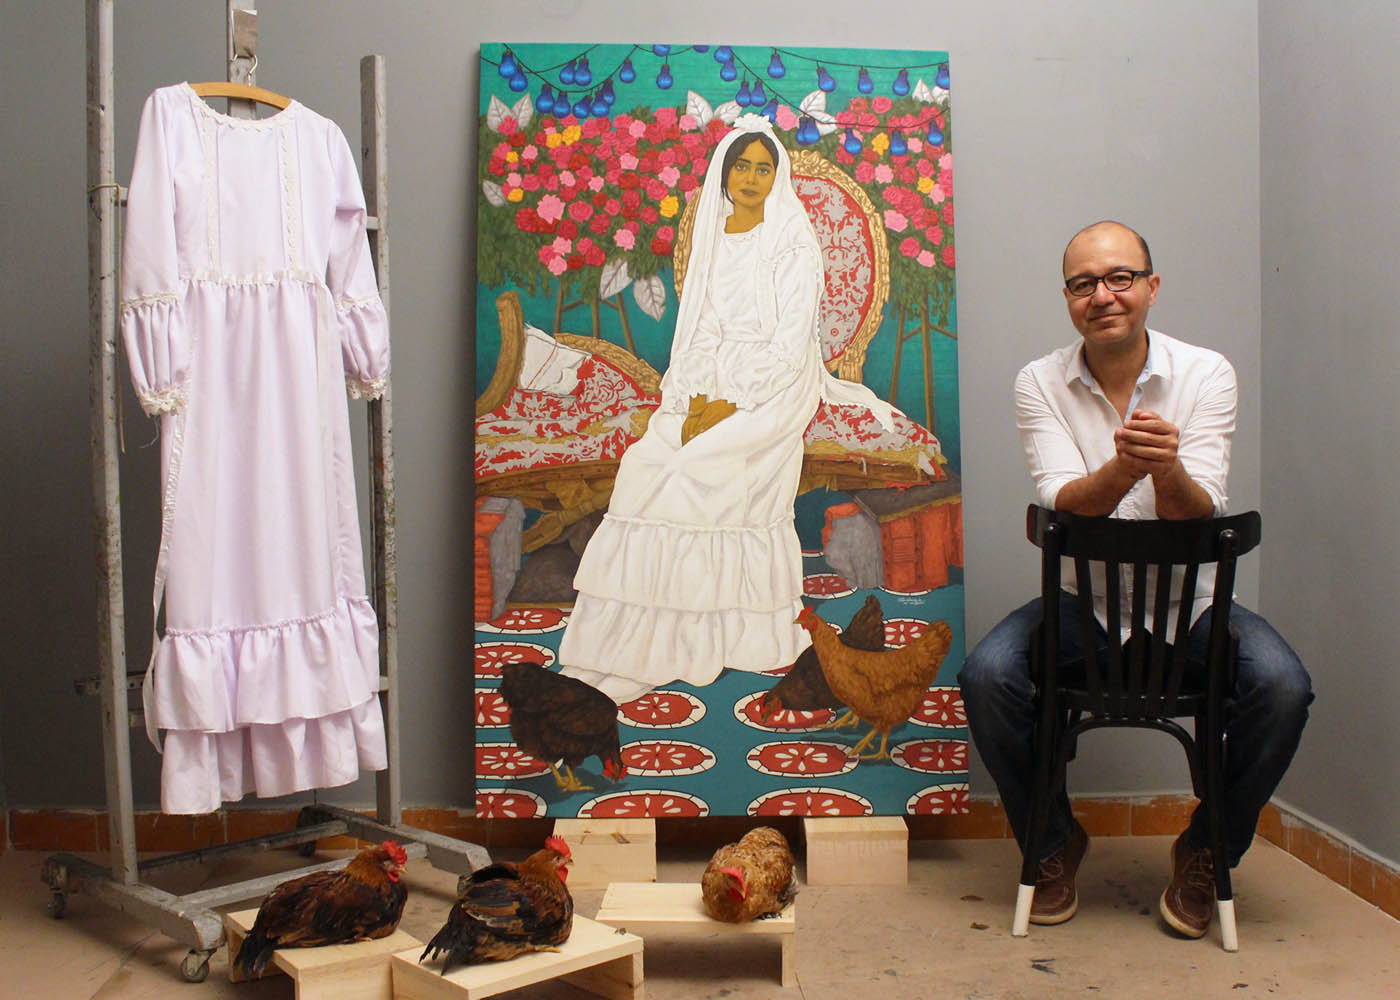 الفنان - علي حسان - زواج مؤقت - في الاستوديو الخاص بي